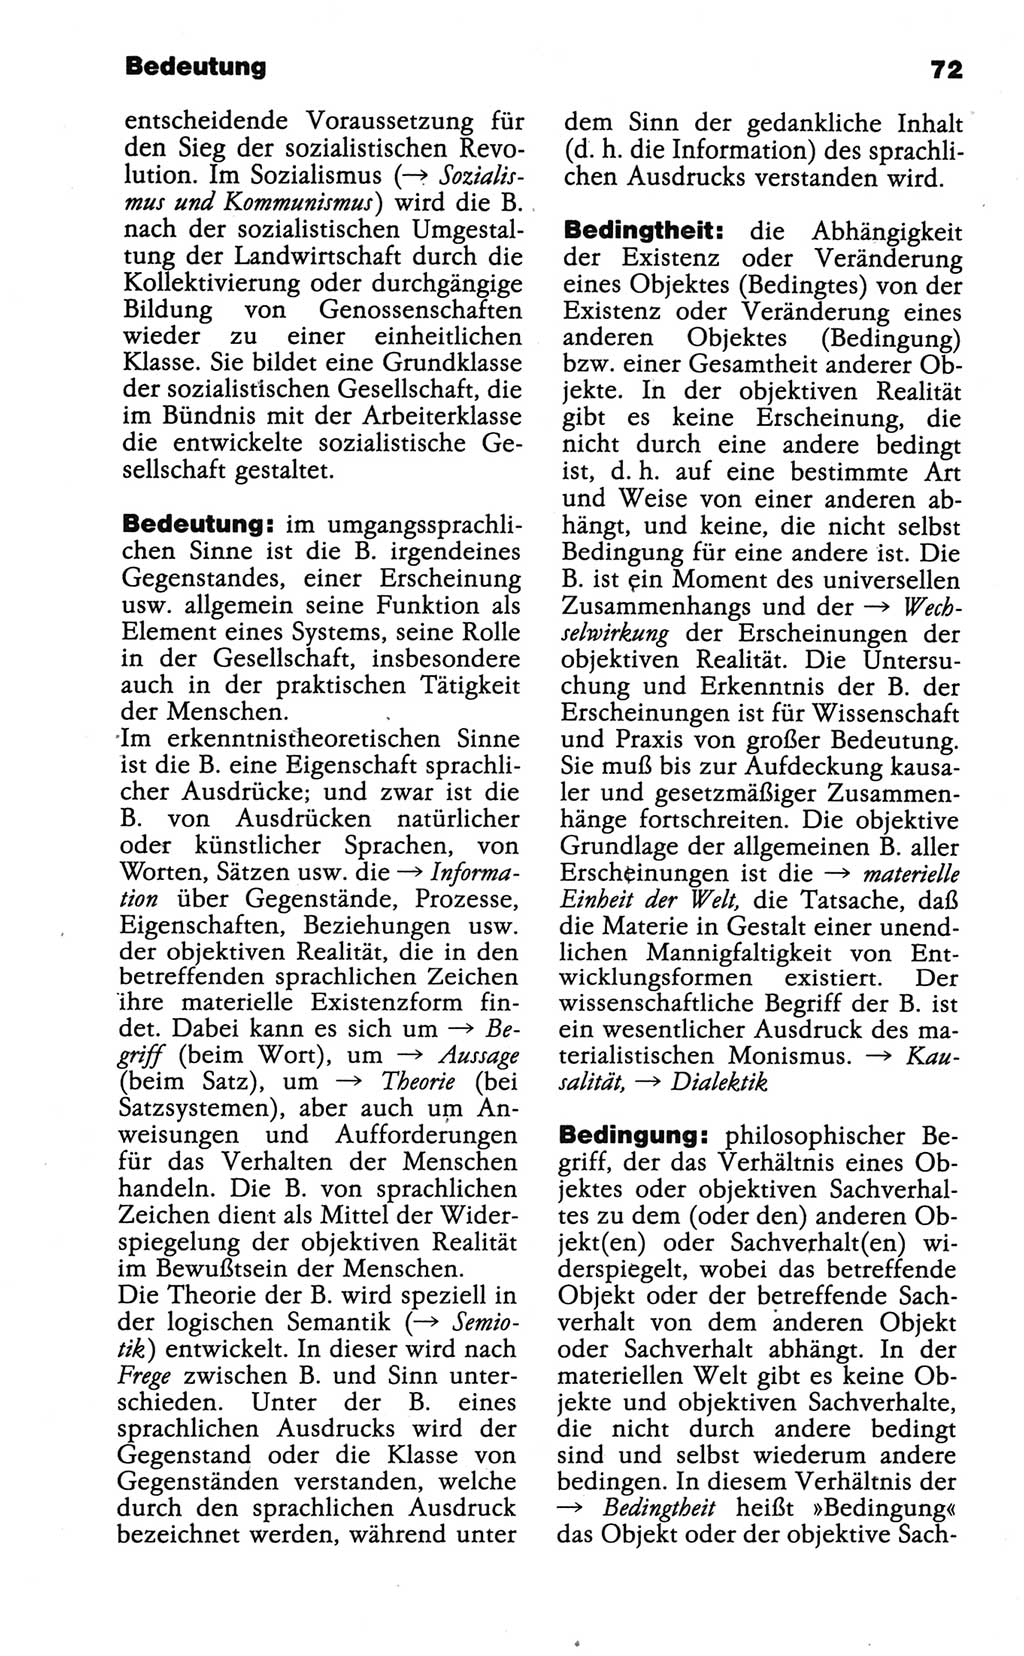 Wörterbuch der marxistisch-leninistischen Philosophie [Deutsche Demokratische Republik (DDR)] 1986, Seite 72 (Wb. ML Phil. DDR 1986, S. 72)